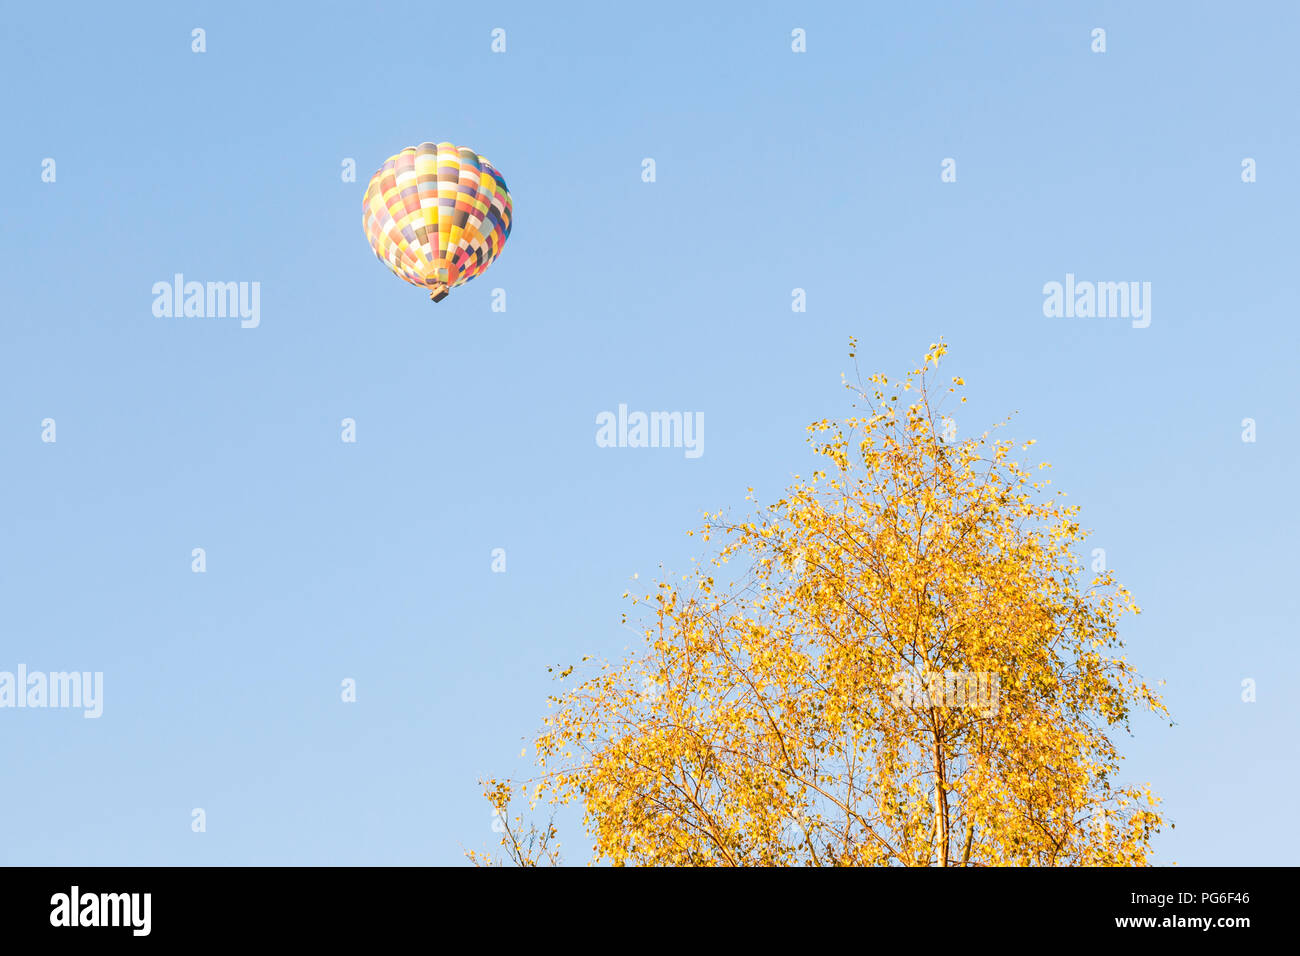 Ballonfahrten in einem blauen Himmel. Heißluftballon schweben über einen Baum im Herbst, Derbyshire, England, Großbritannien Stockfoto